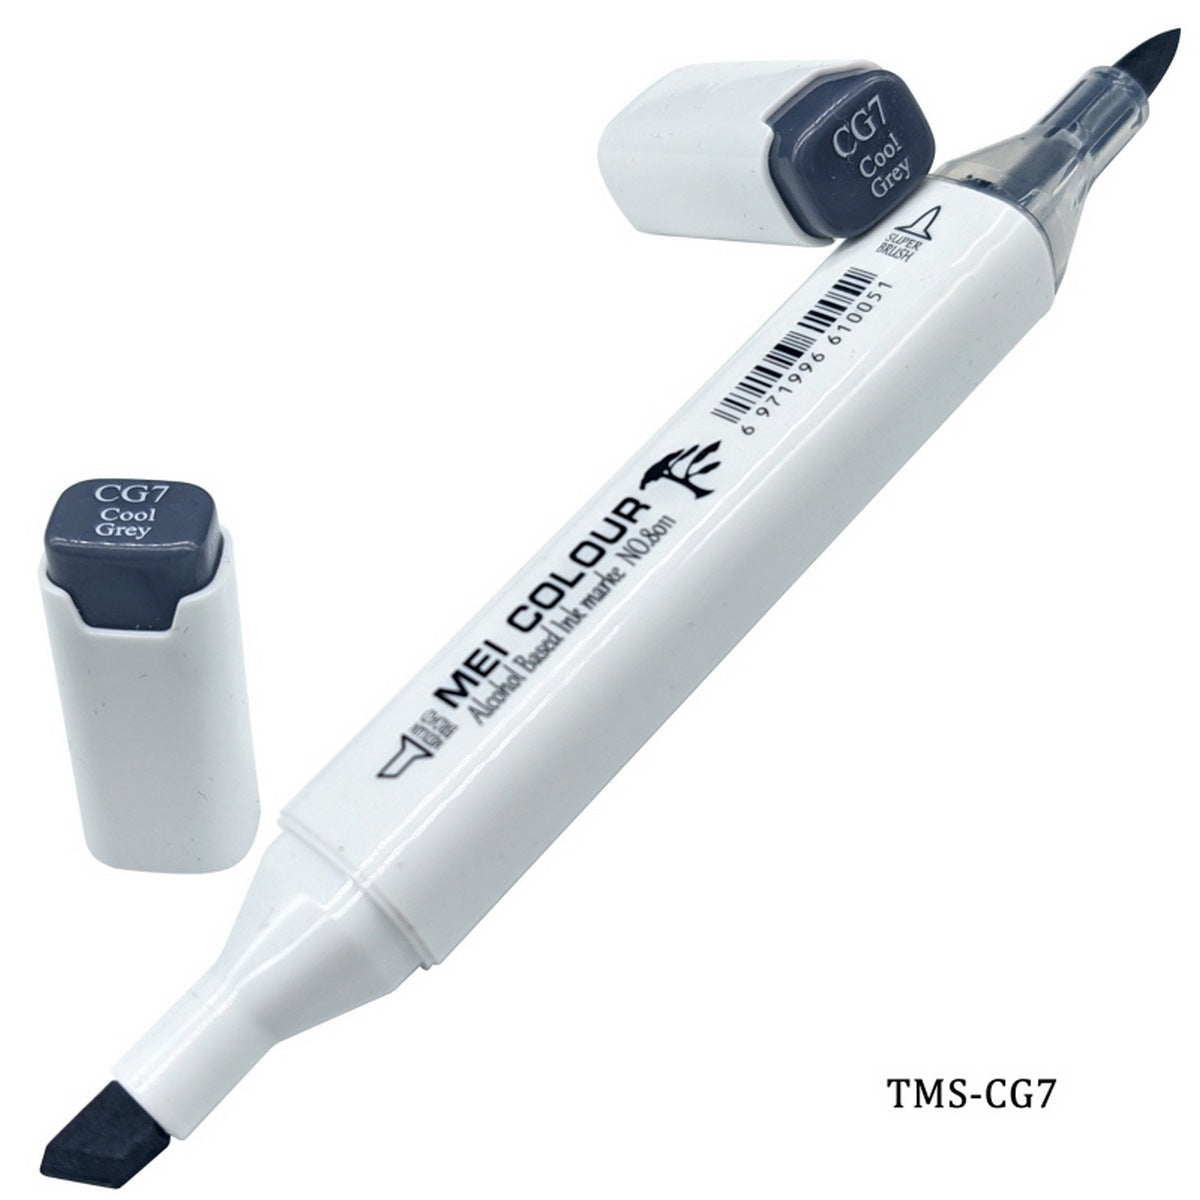 jags-mumbai Marker 2 in 1 Marker Pen (Grey Color)